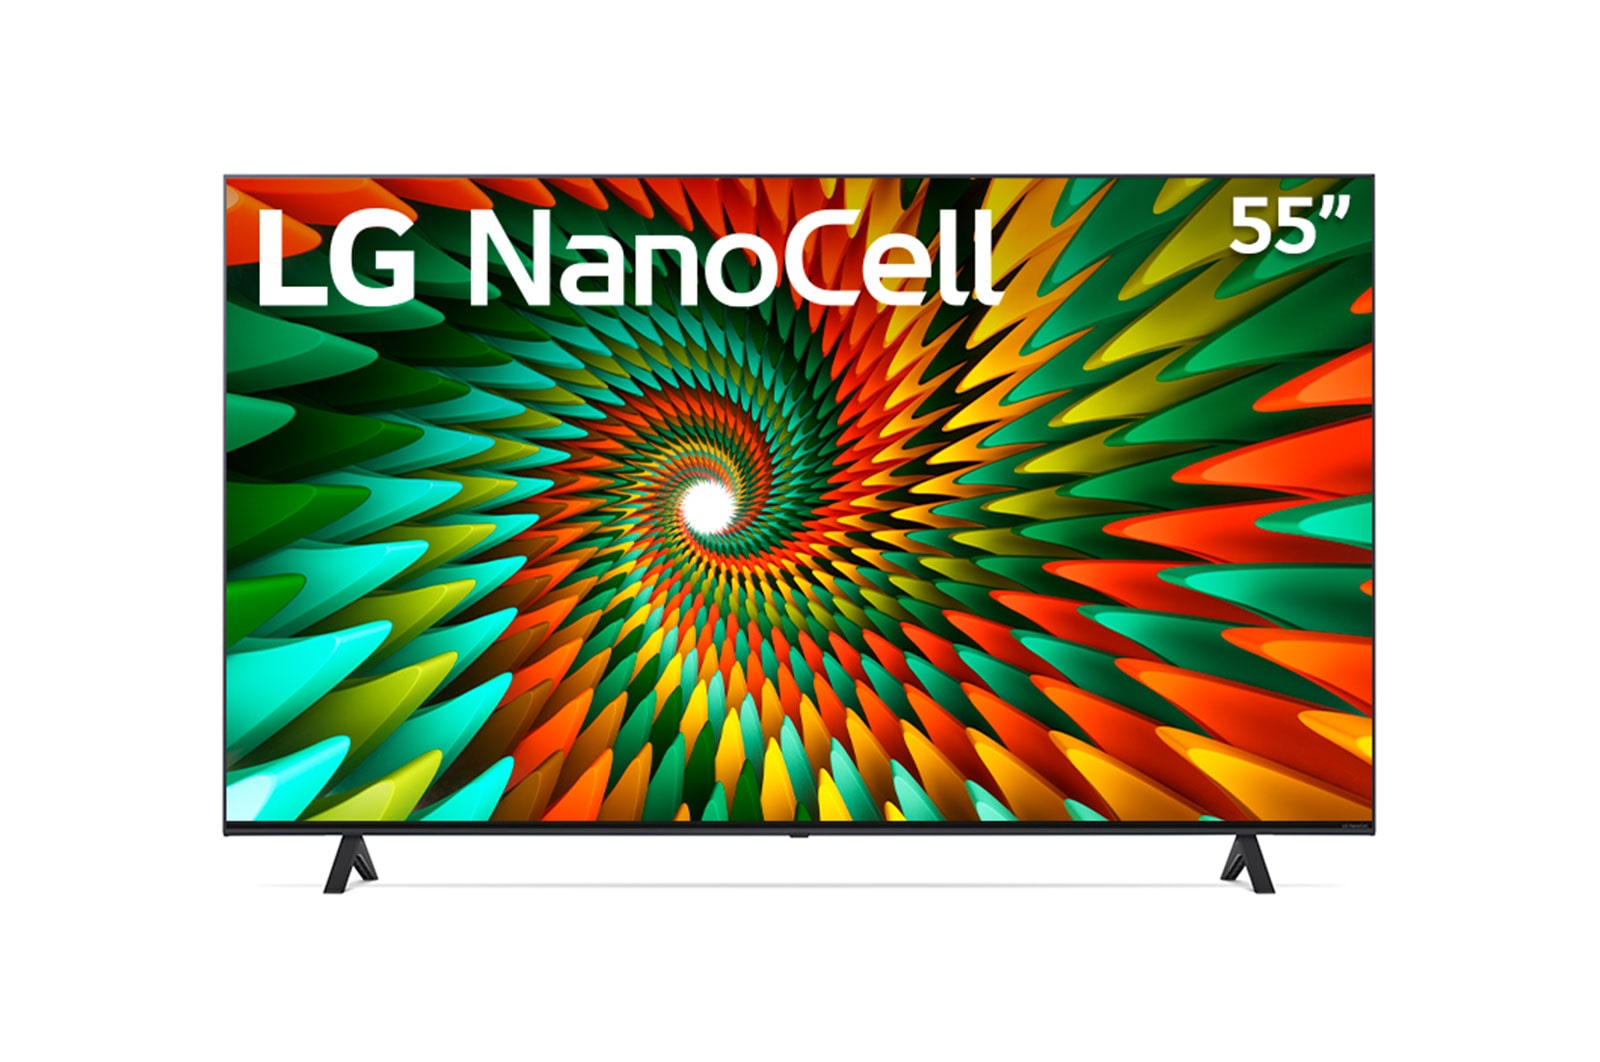 LG Televisor LG 55" NanoCell|4K |Procesador IA α5 |Smart TV|Filtro de color|Filmmaker mode| Incluye Magic Remote, 55NANO77SRA